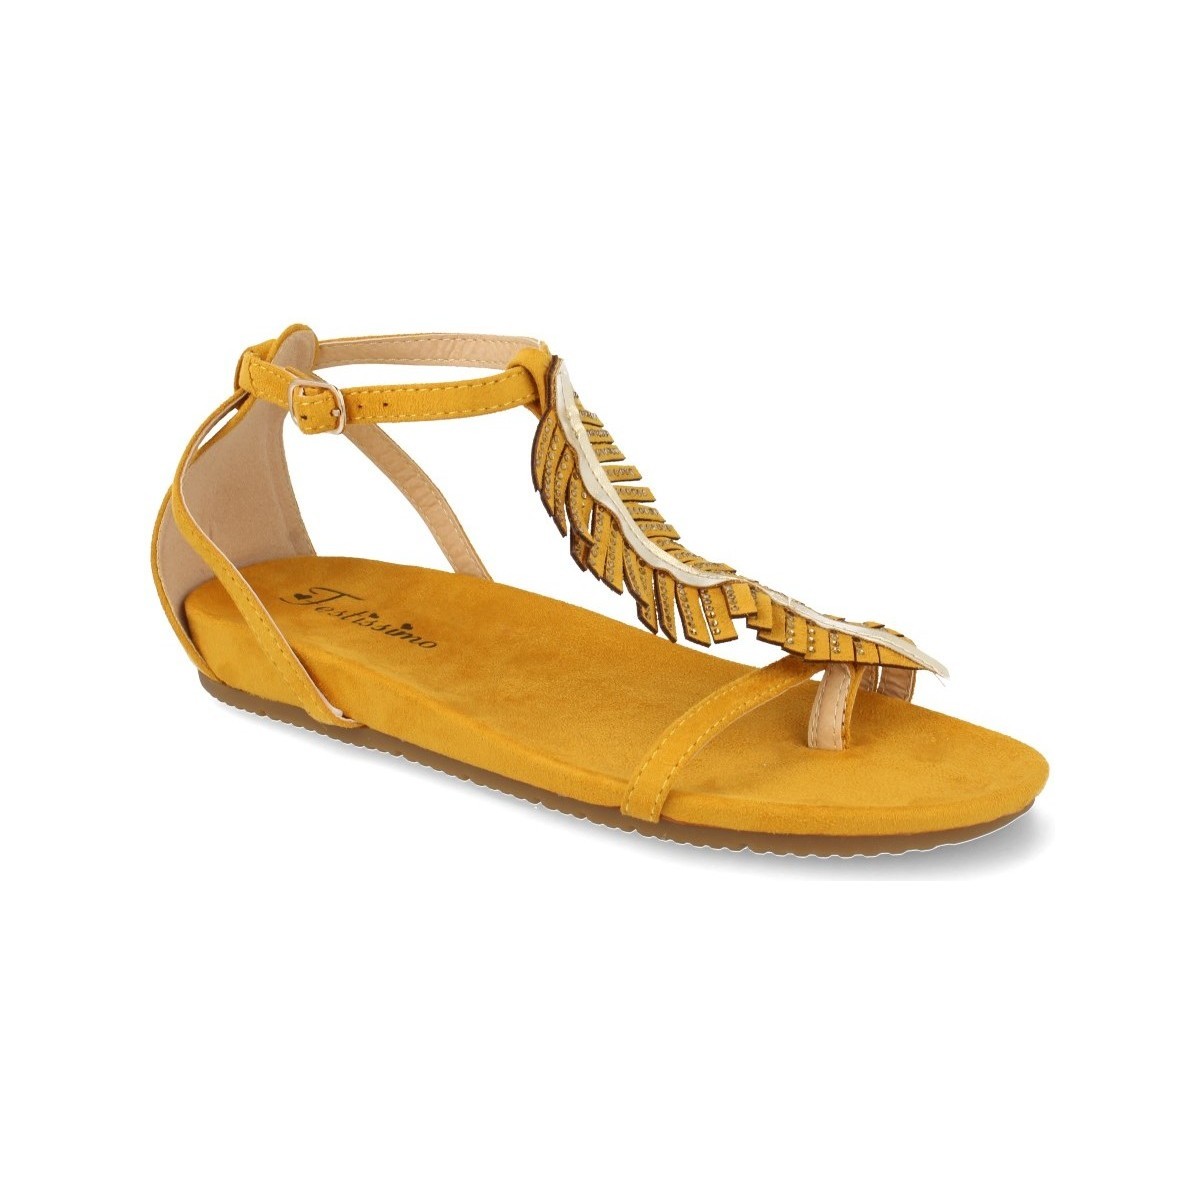 Sapatos Mulher Sandálias Festissimo C3829 Amarelo